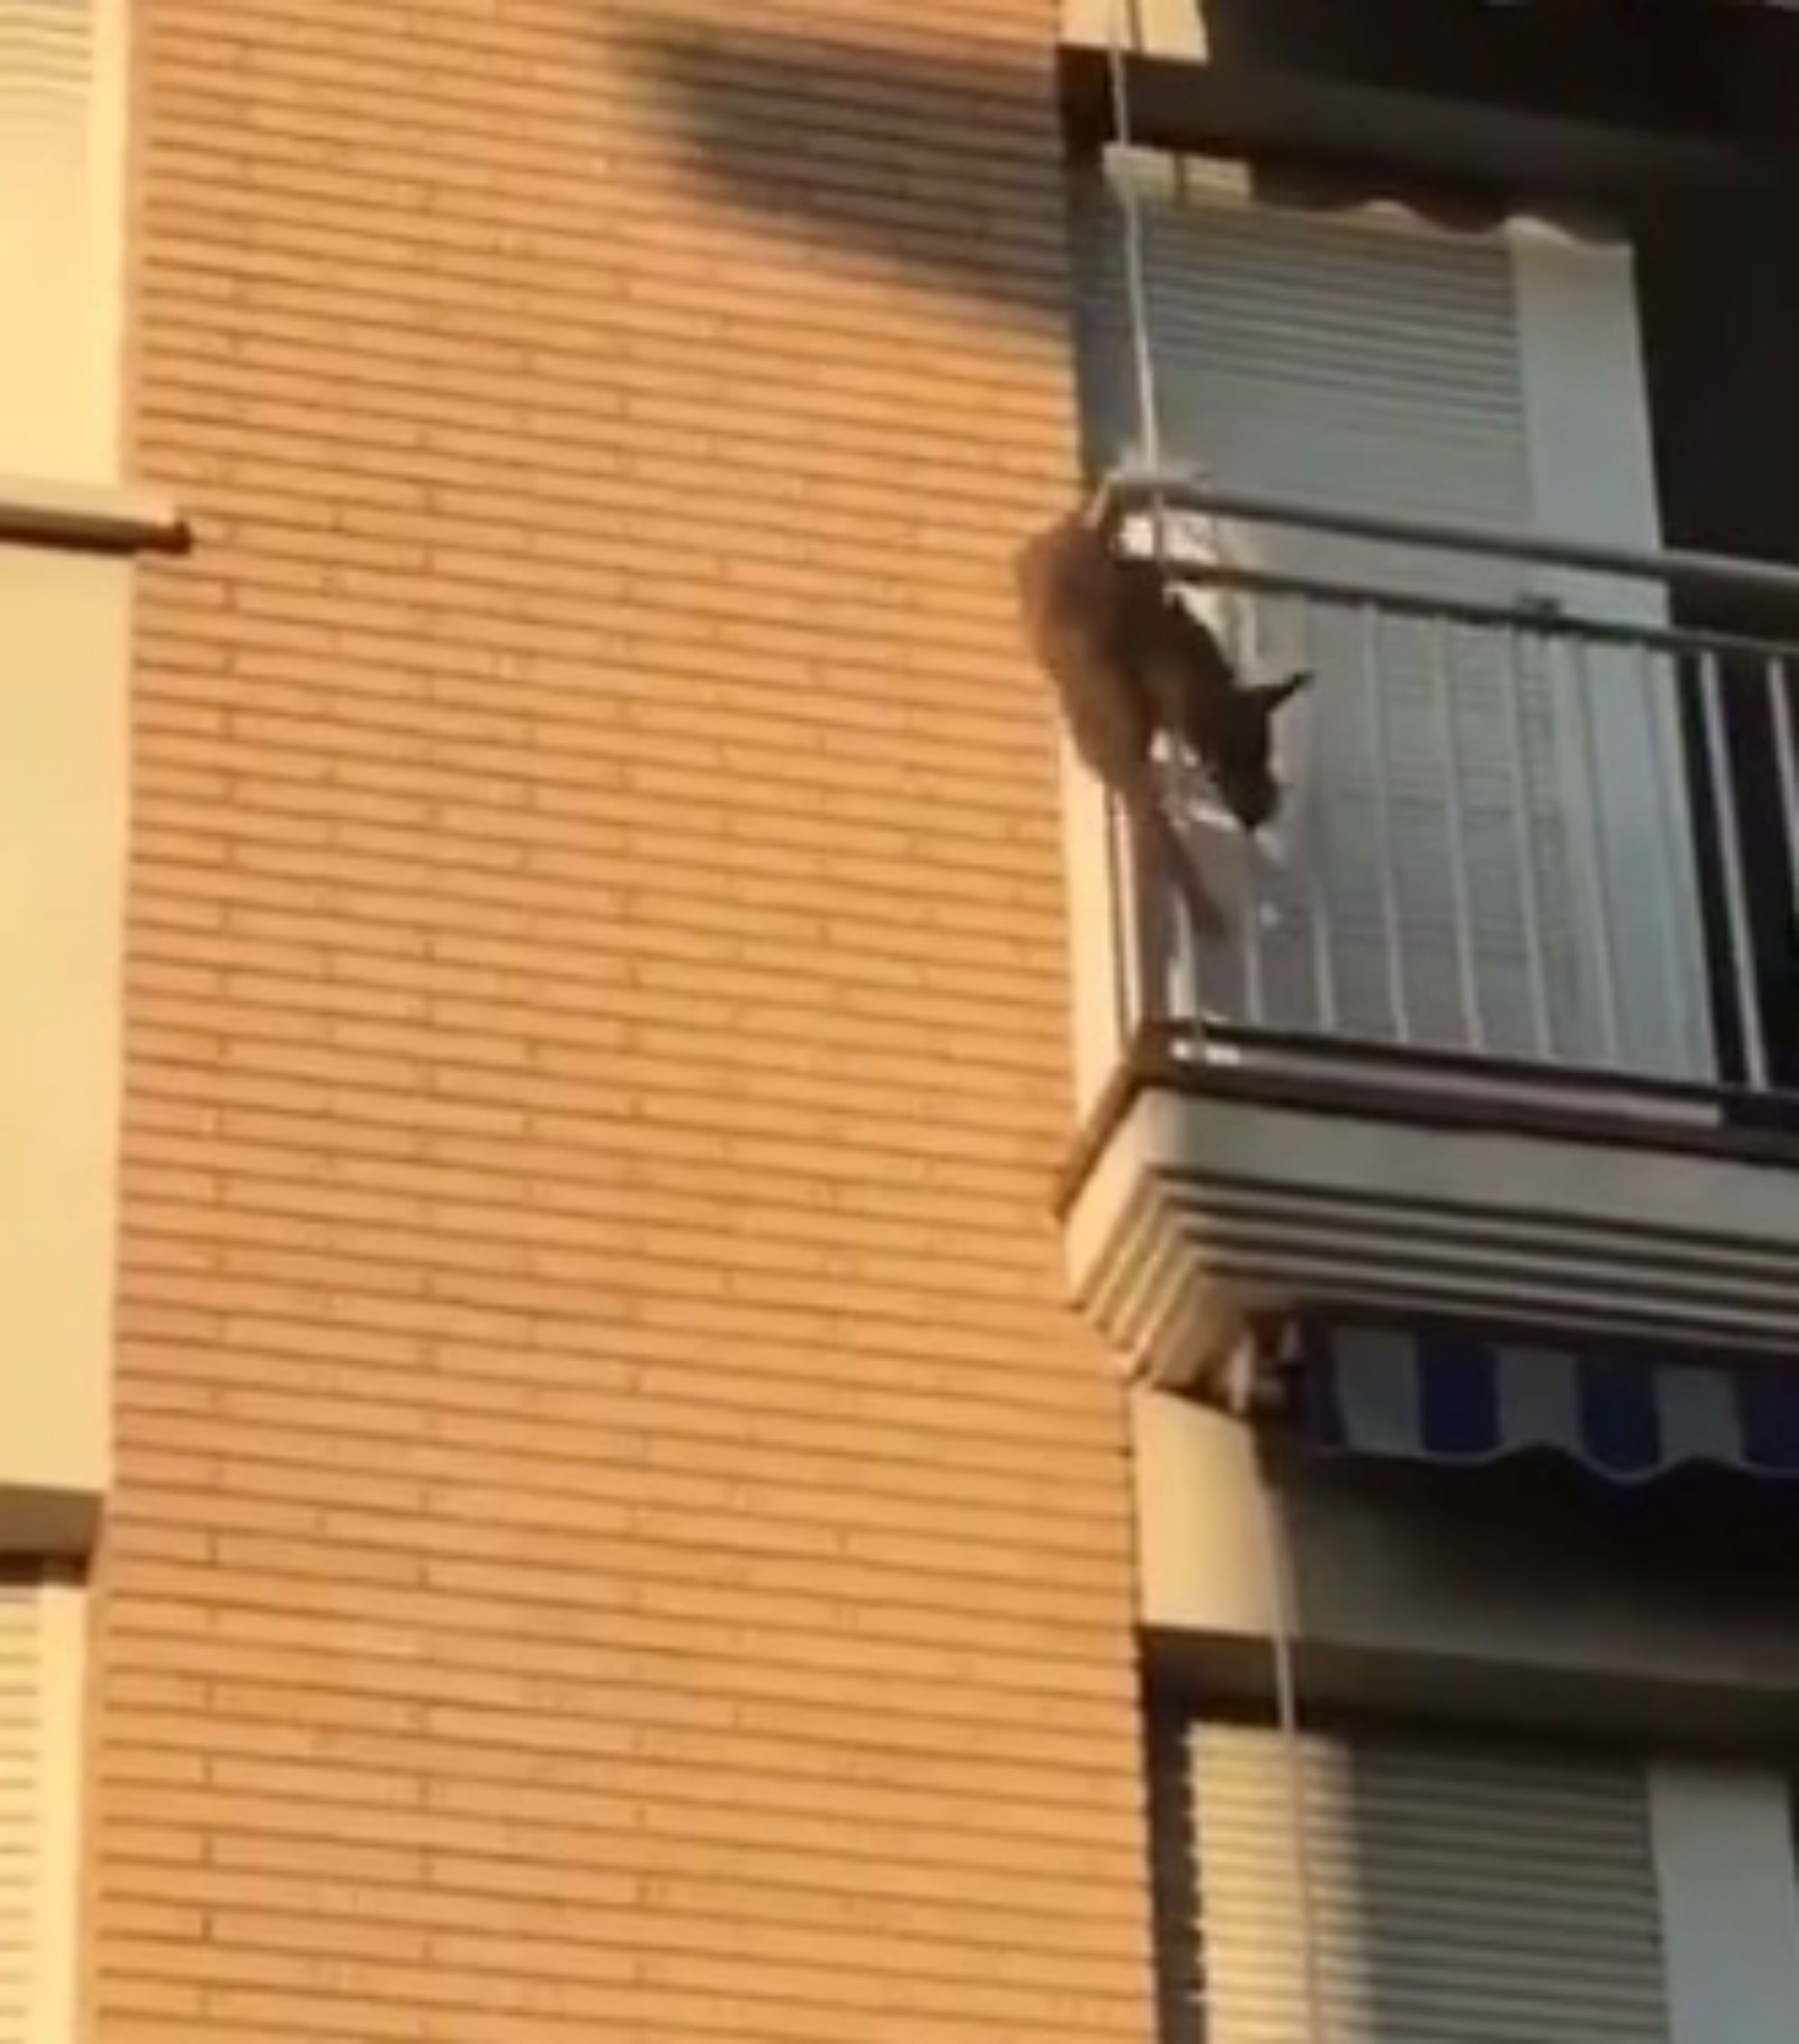 Denuncien els propietaris d'un gos que va saltar pel balcó a Polinyà